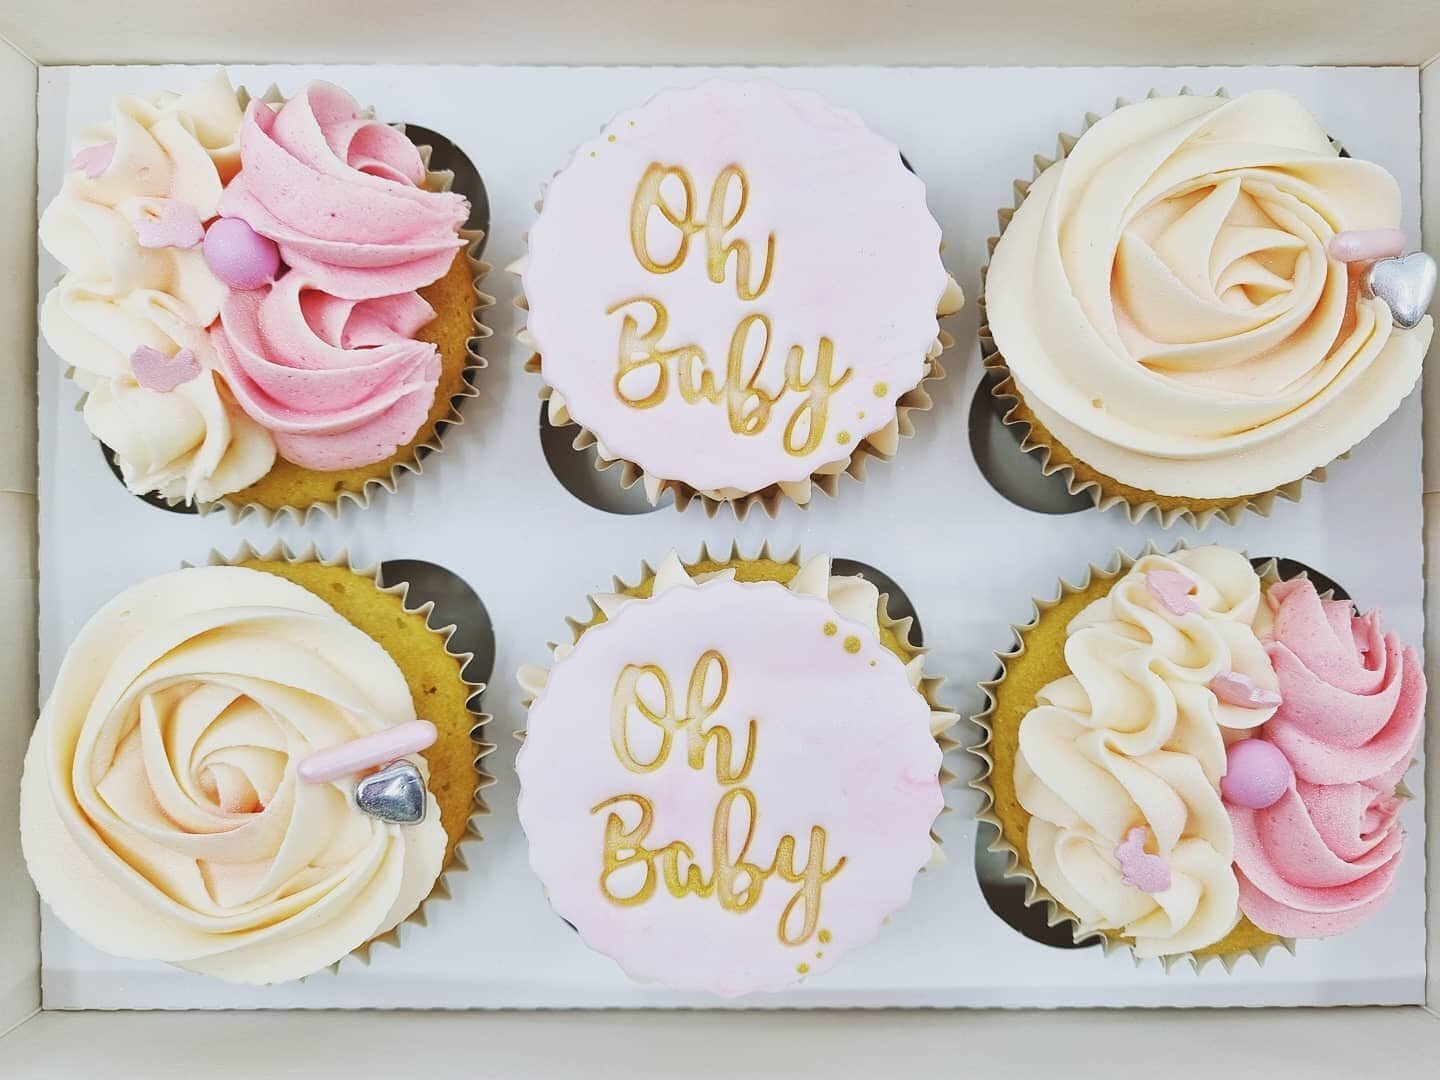 'Oh Baby' Cupcake Gift Box